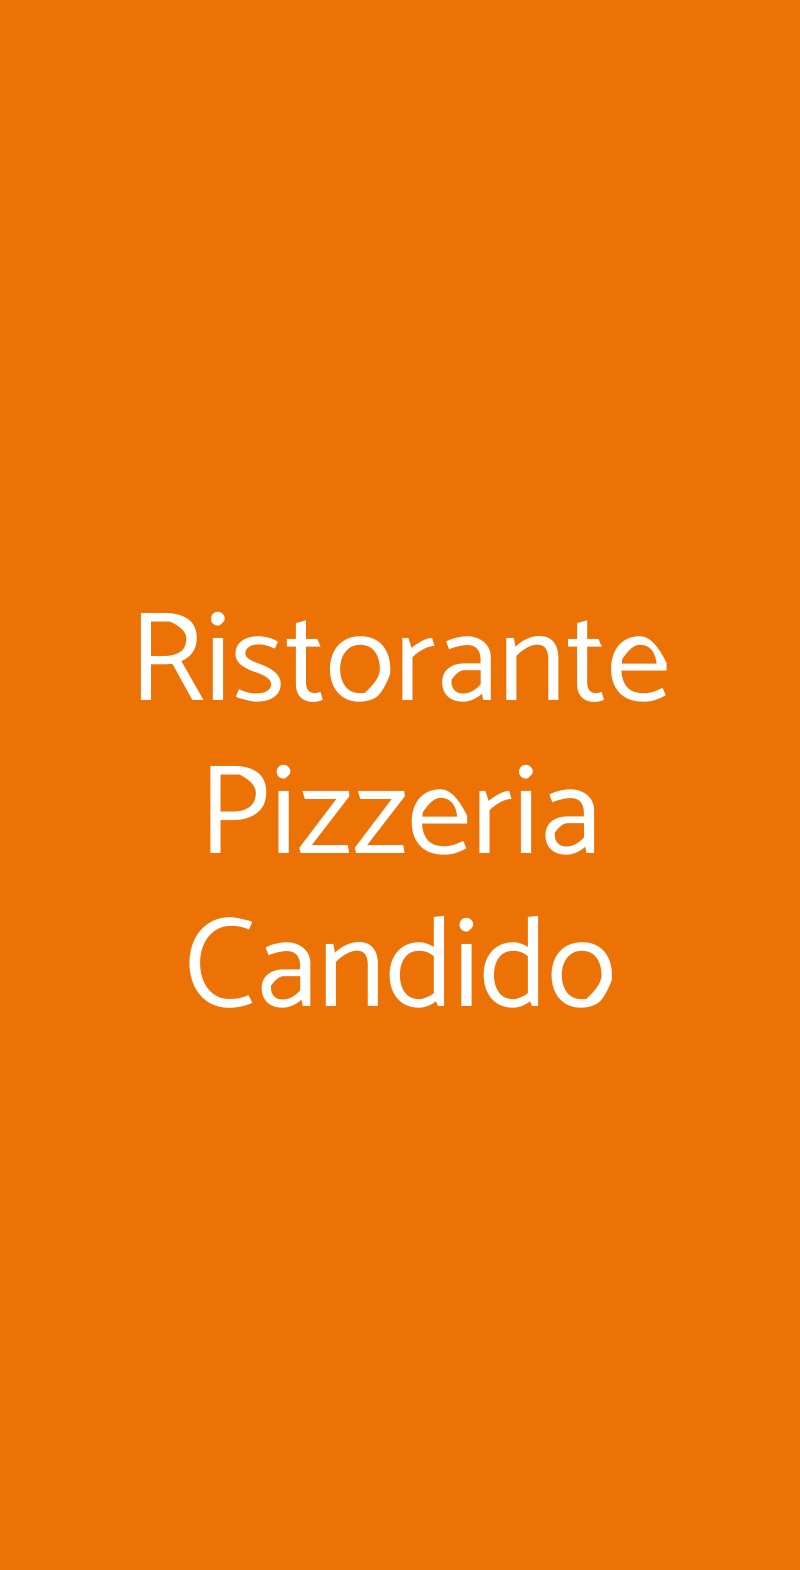 Ristorante Pizzeria Candido Roma menù 1 pagina